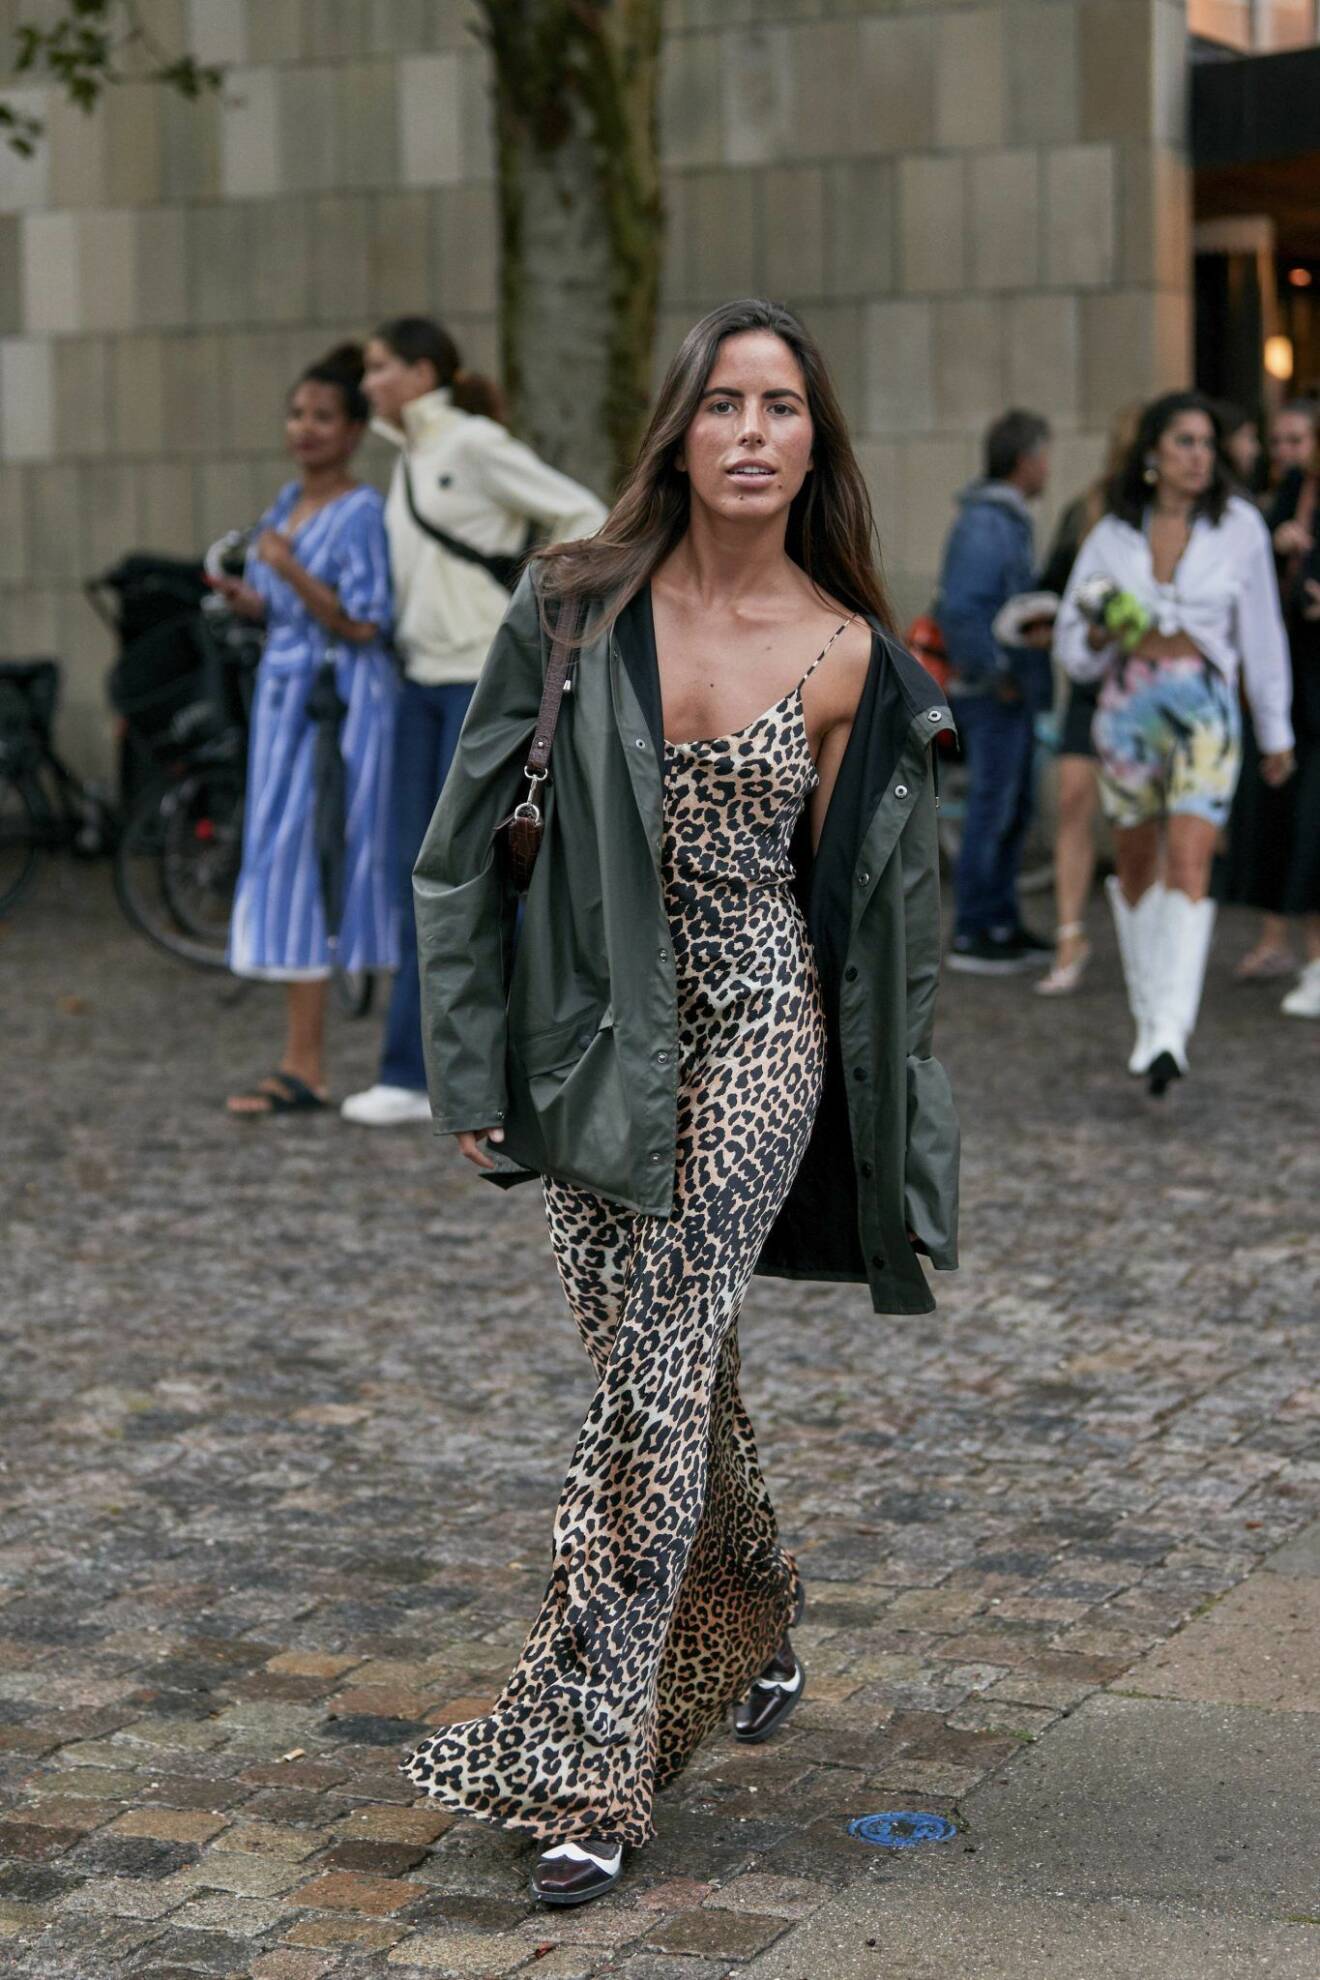 Slipklänning i leopard från streetstyle under modevecka i Köpenhamn.